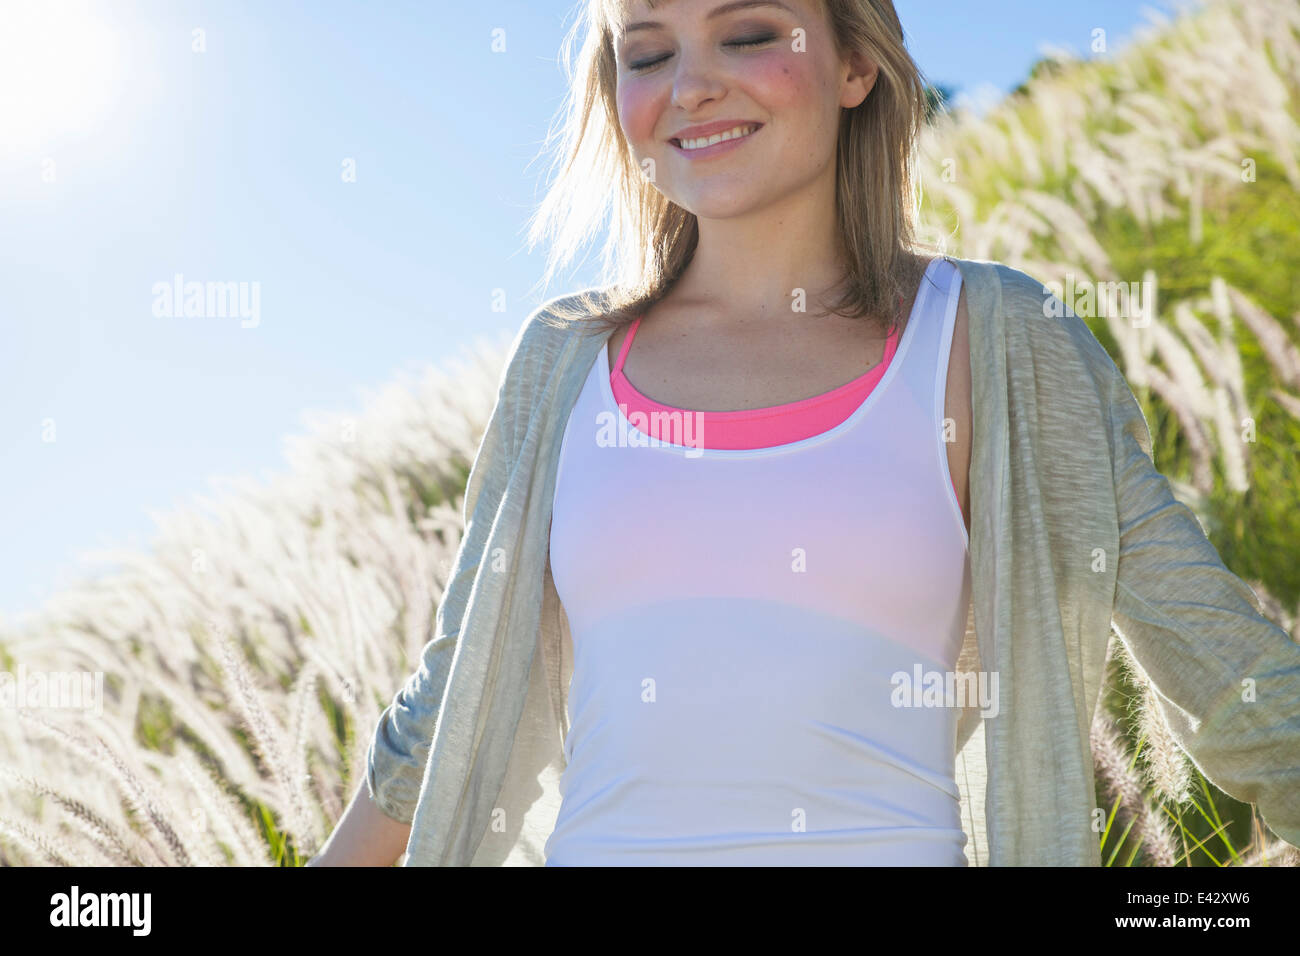 Young woman smiling avec les yeux fermés dans l'herbe haute Banque D'Images